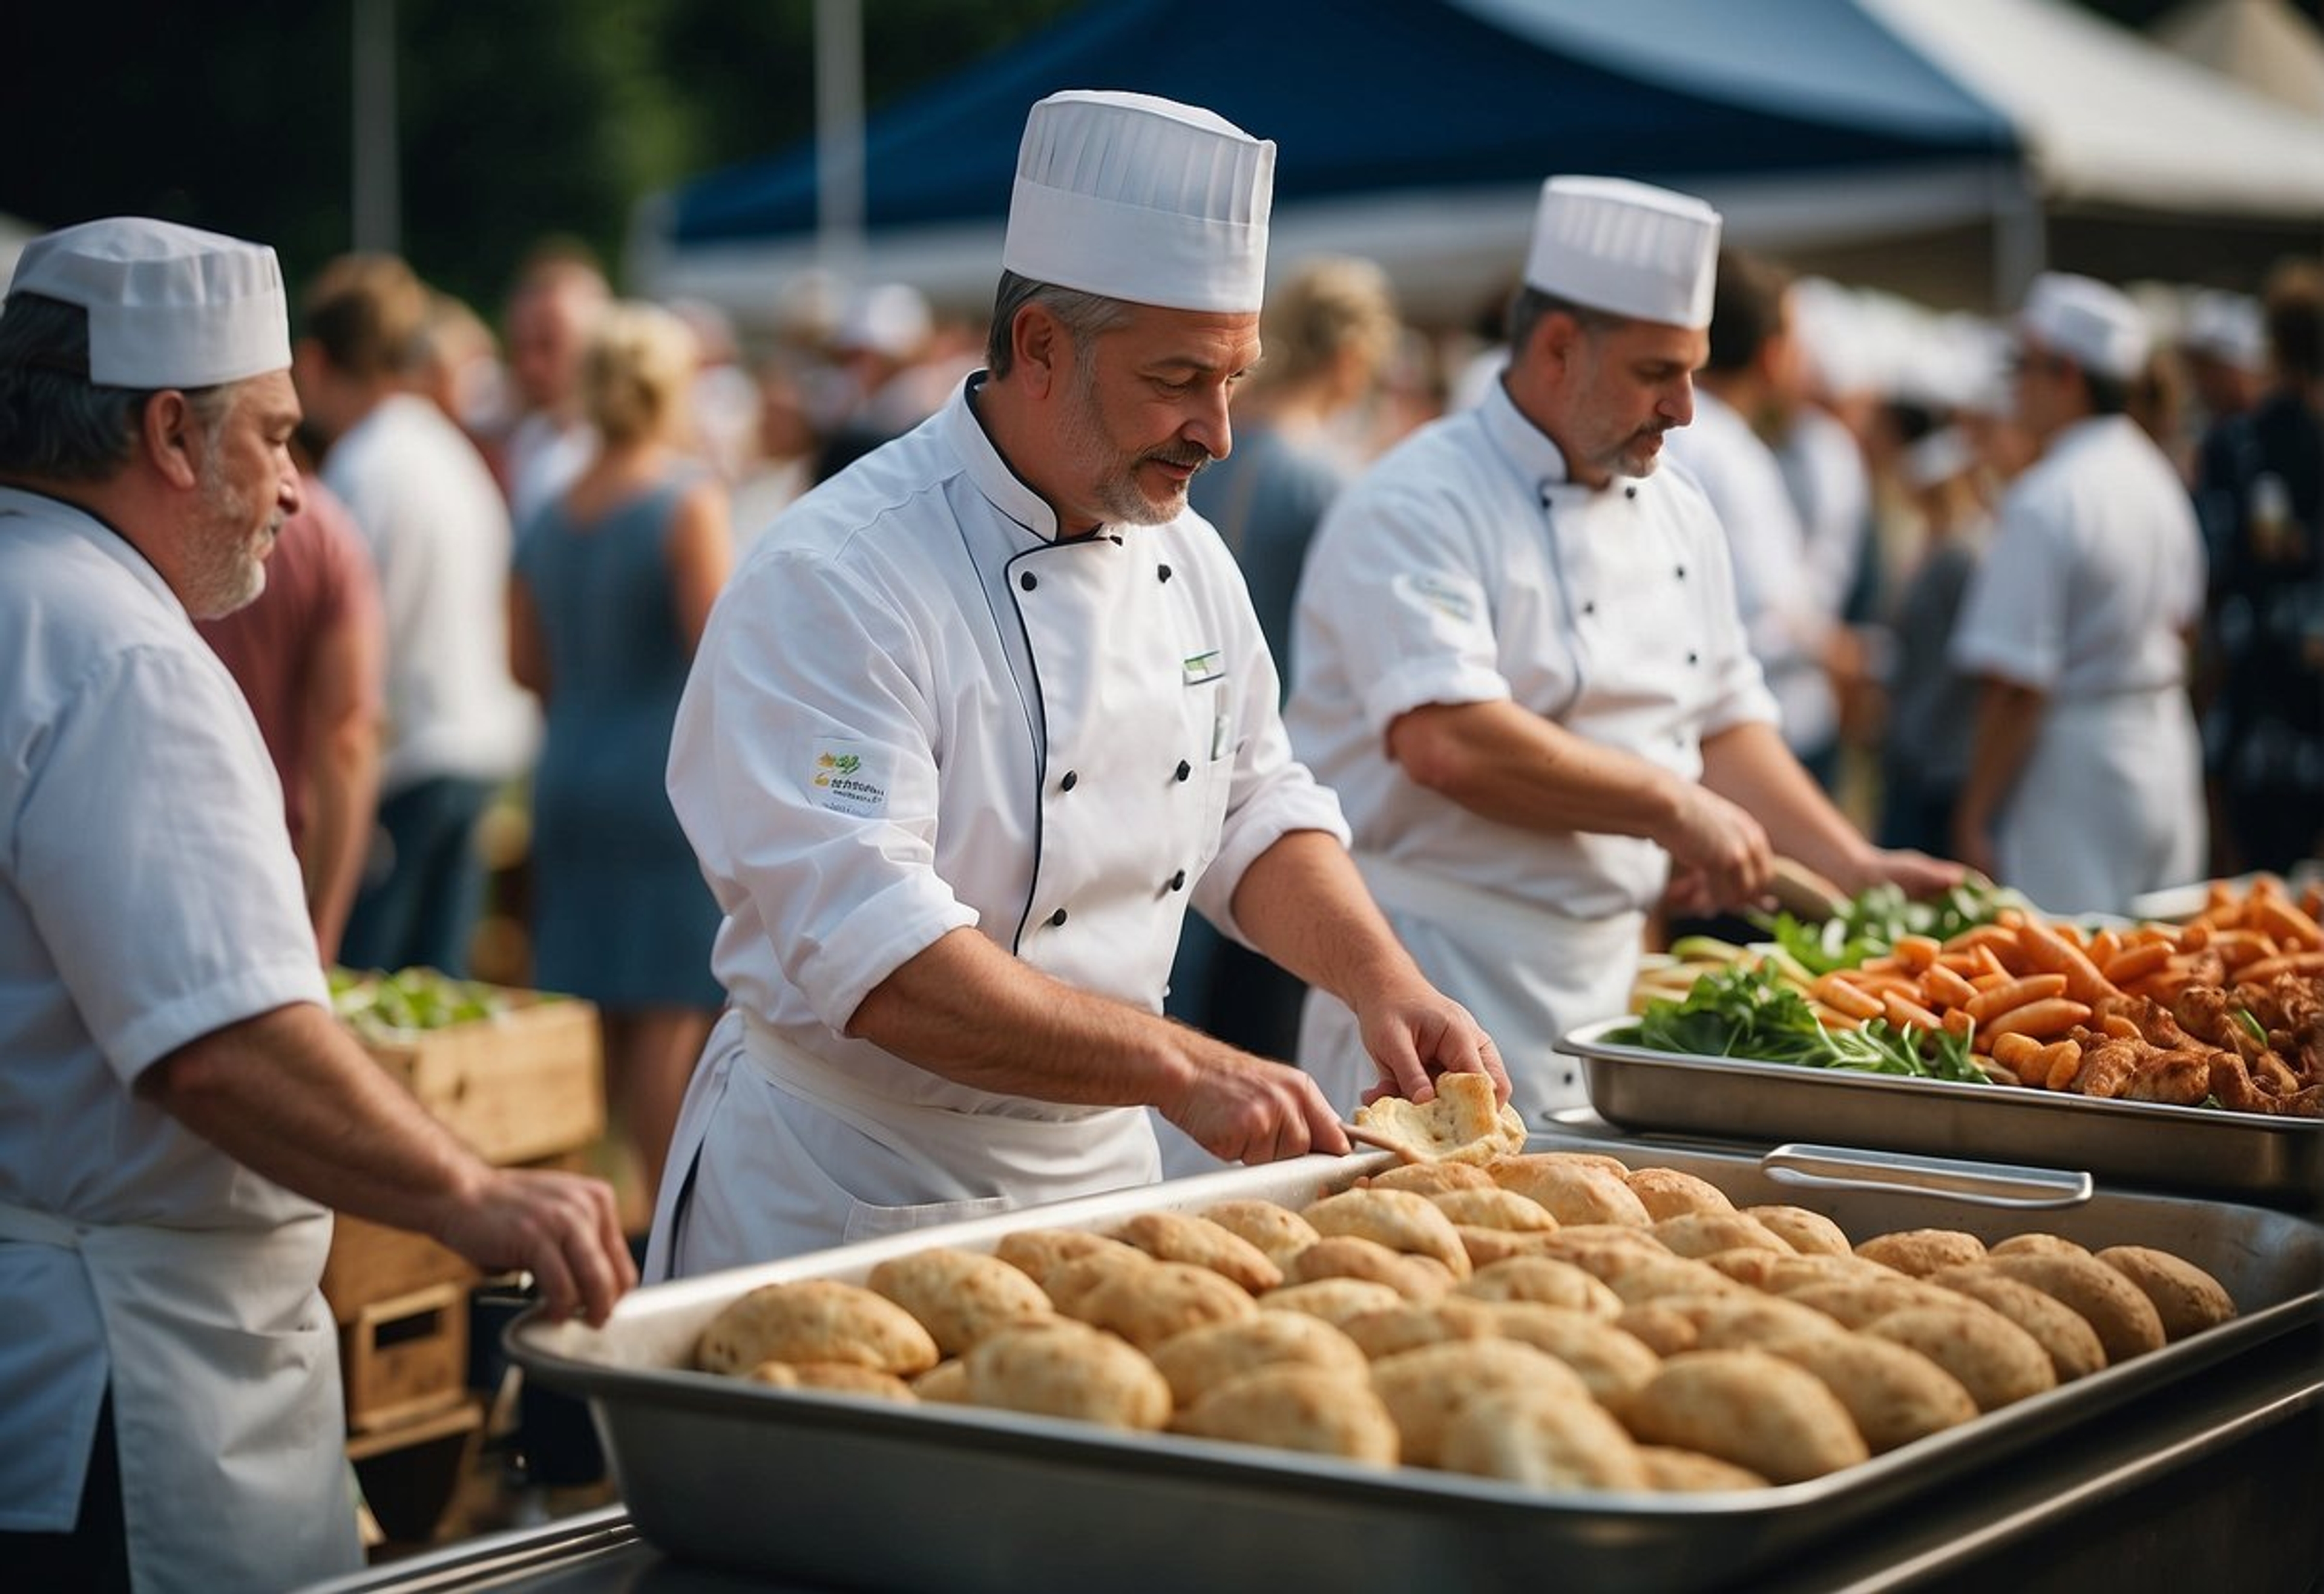 biologische-voedselfestivals-in-belgie-ontmoet-beroemde-chef-koks-en-vier-verantwoorde-gastronomie